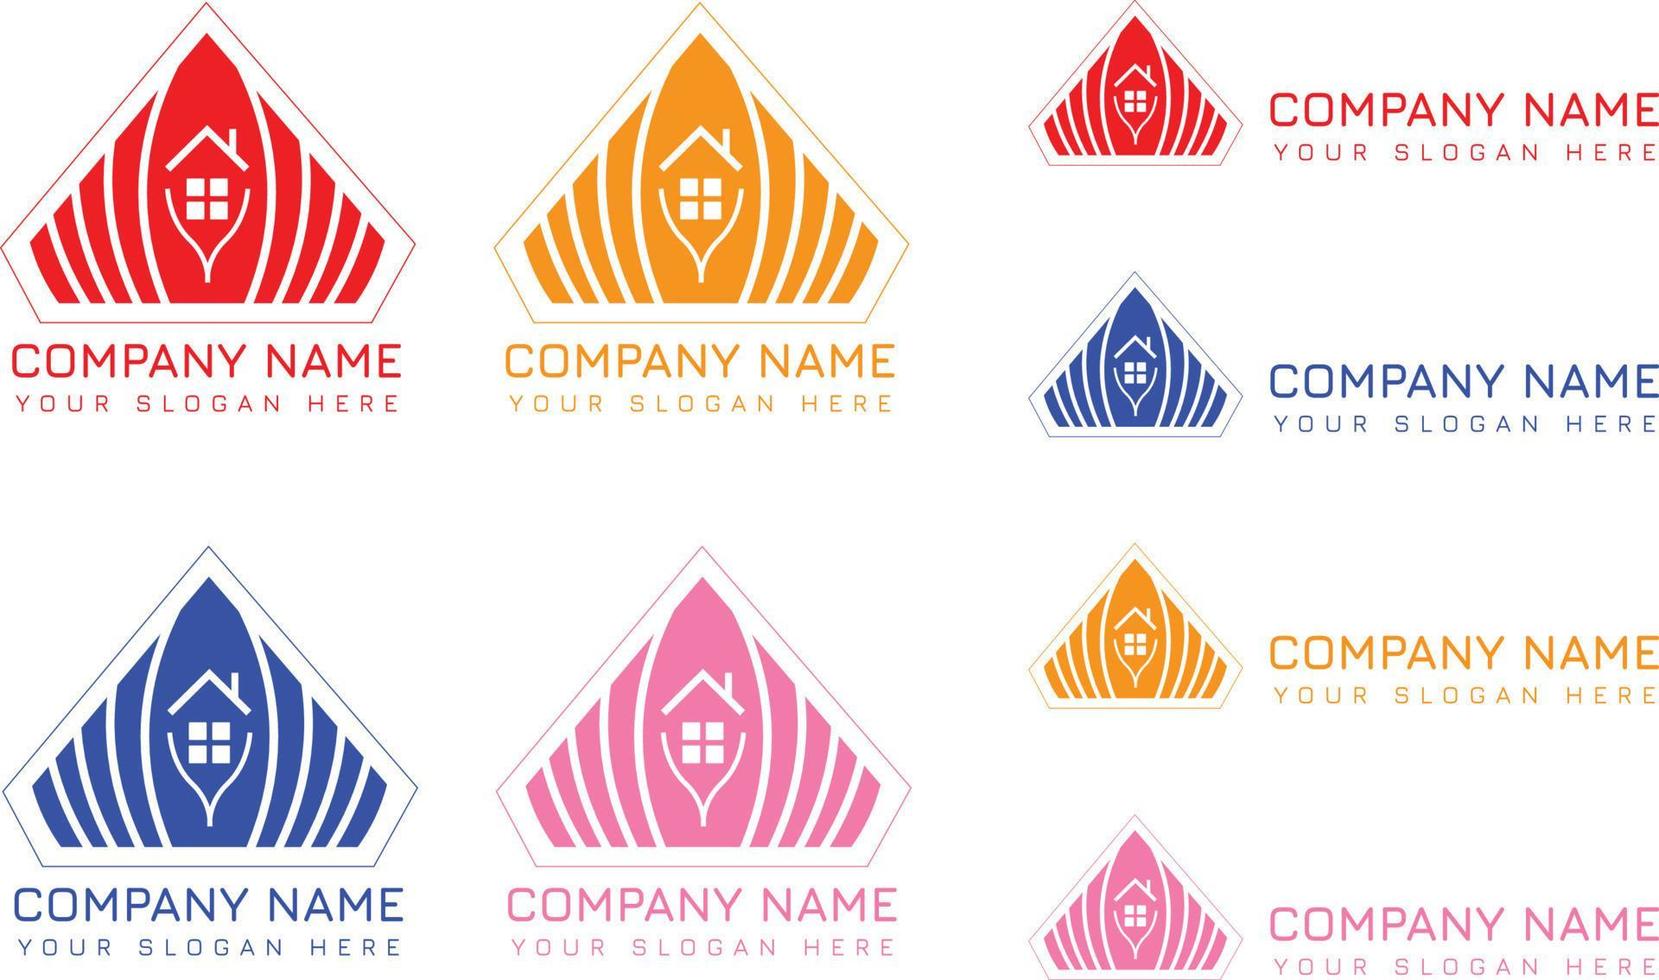 Erstellen von Logo-Design für Ihr Unternehmen vektor